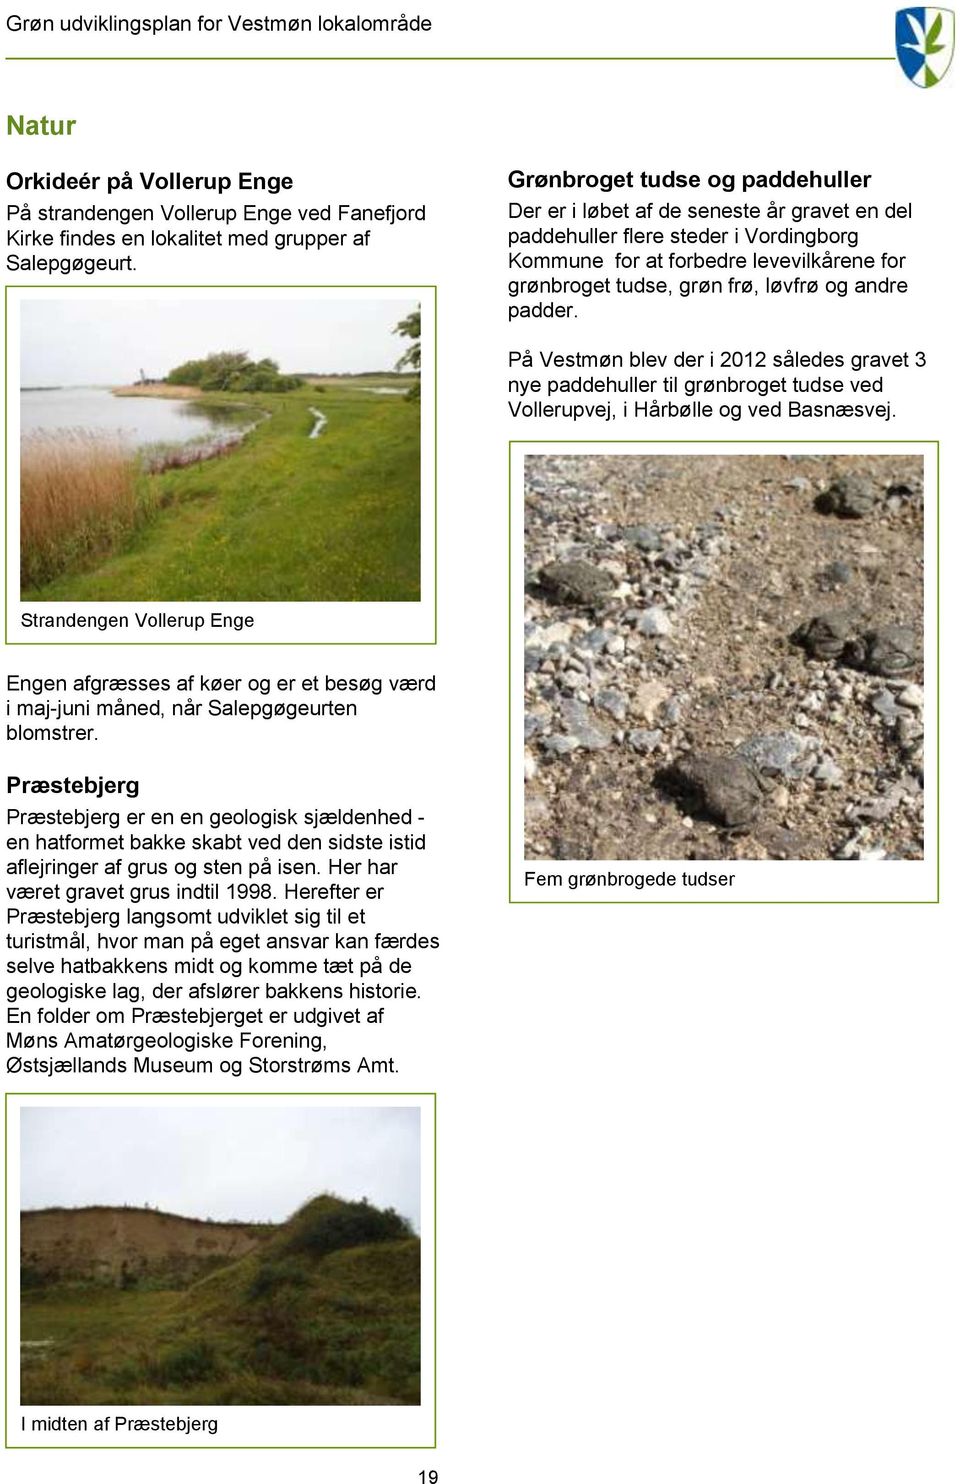 andre padder. På Vestmøn blev der i 2012 således gravet 3 nye paddehuller til grønbroget tudse ved Vollerupvej, i Hårbølle og ved Basnæsvej.